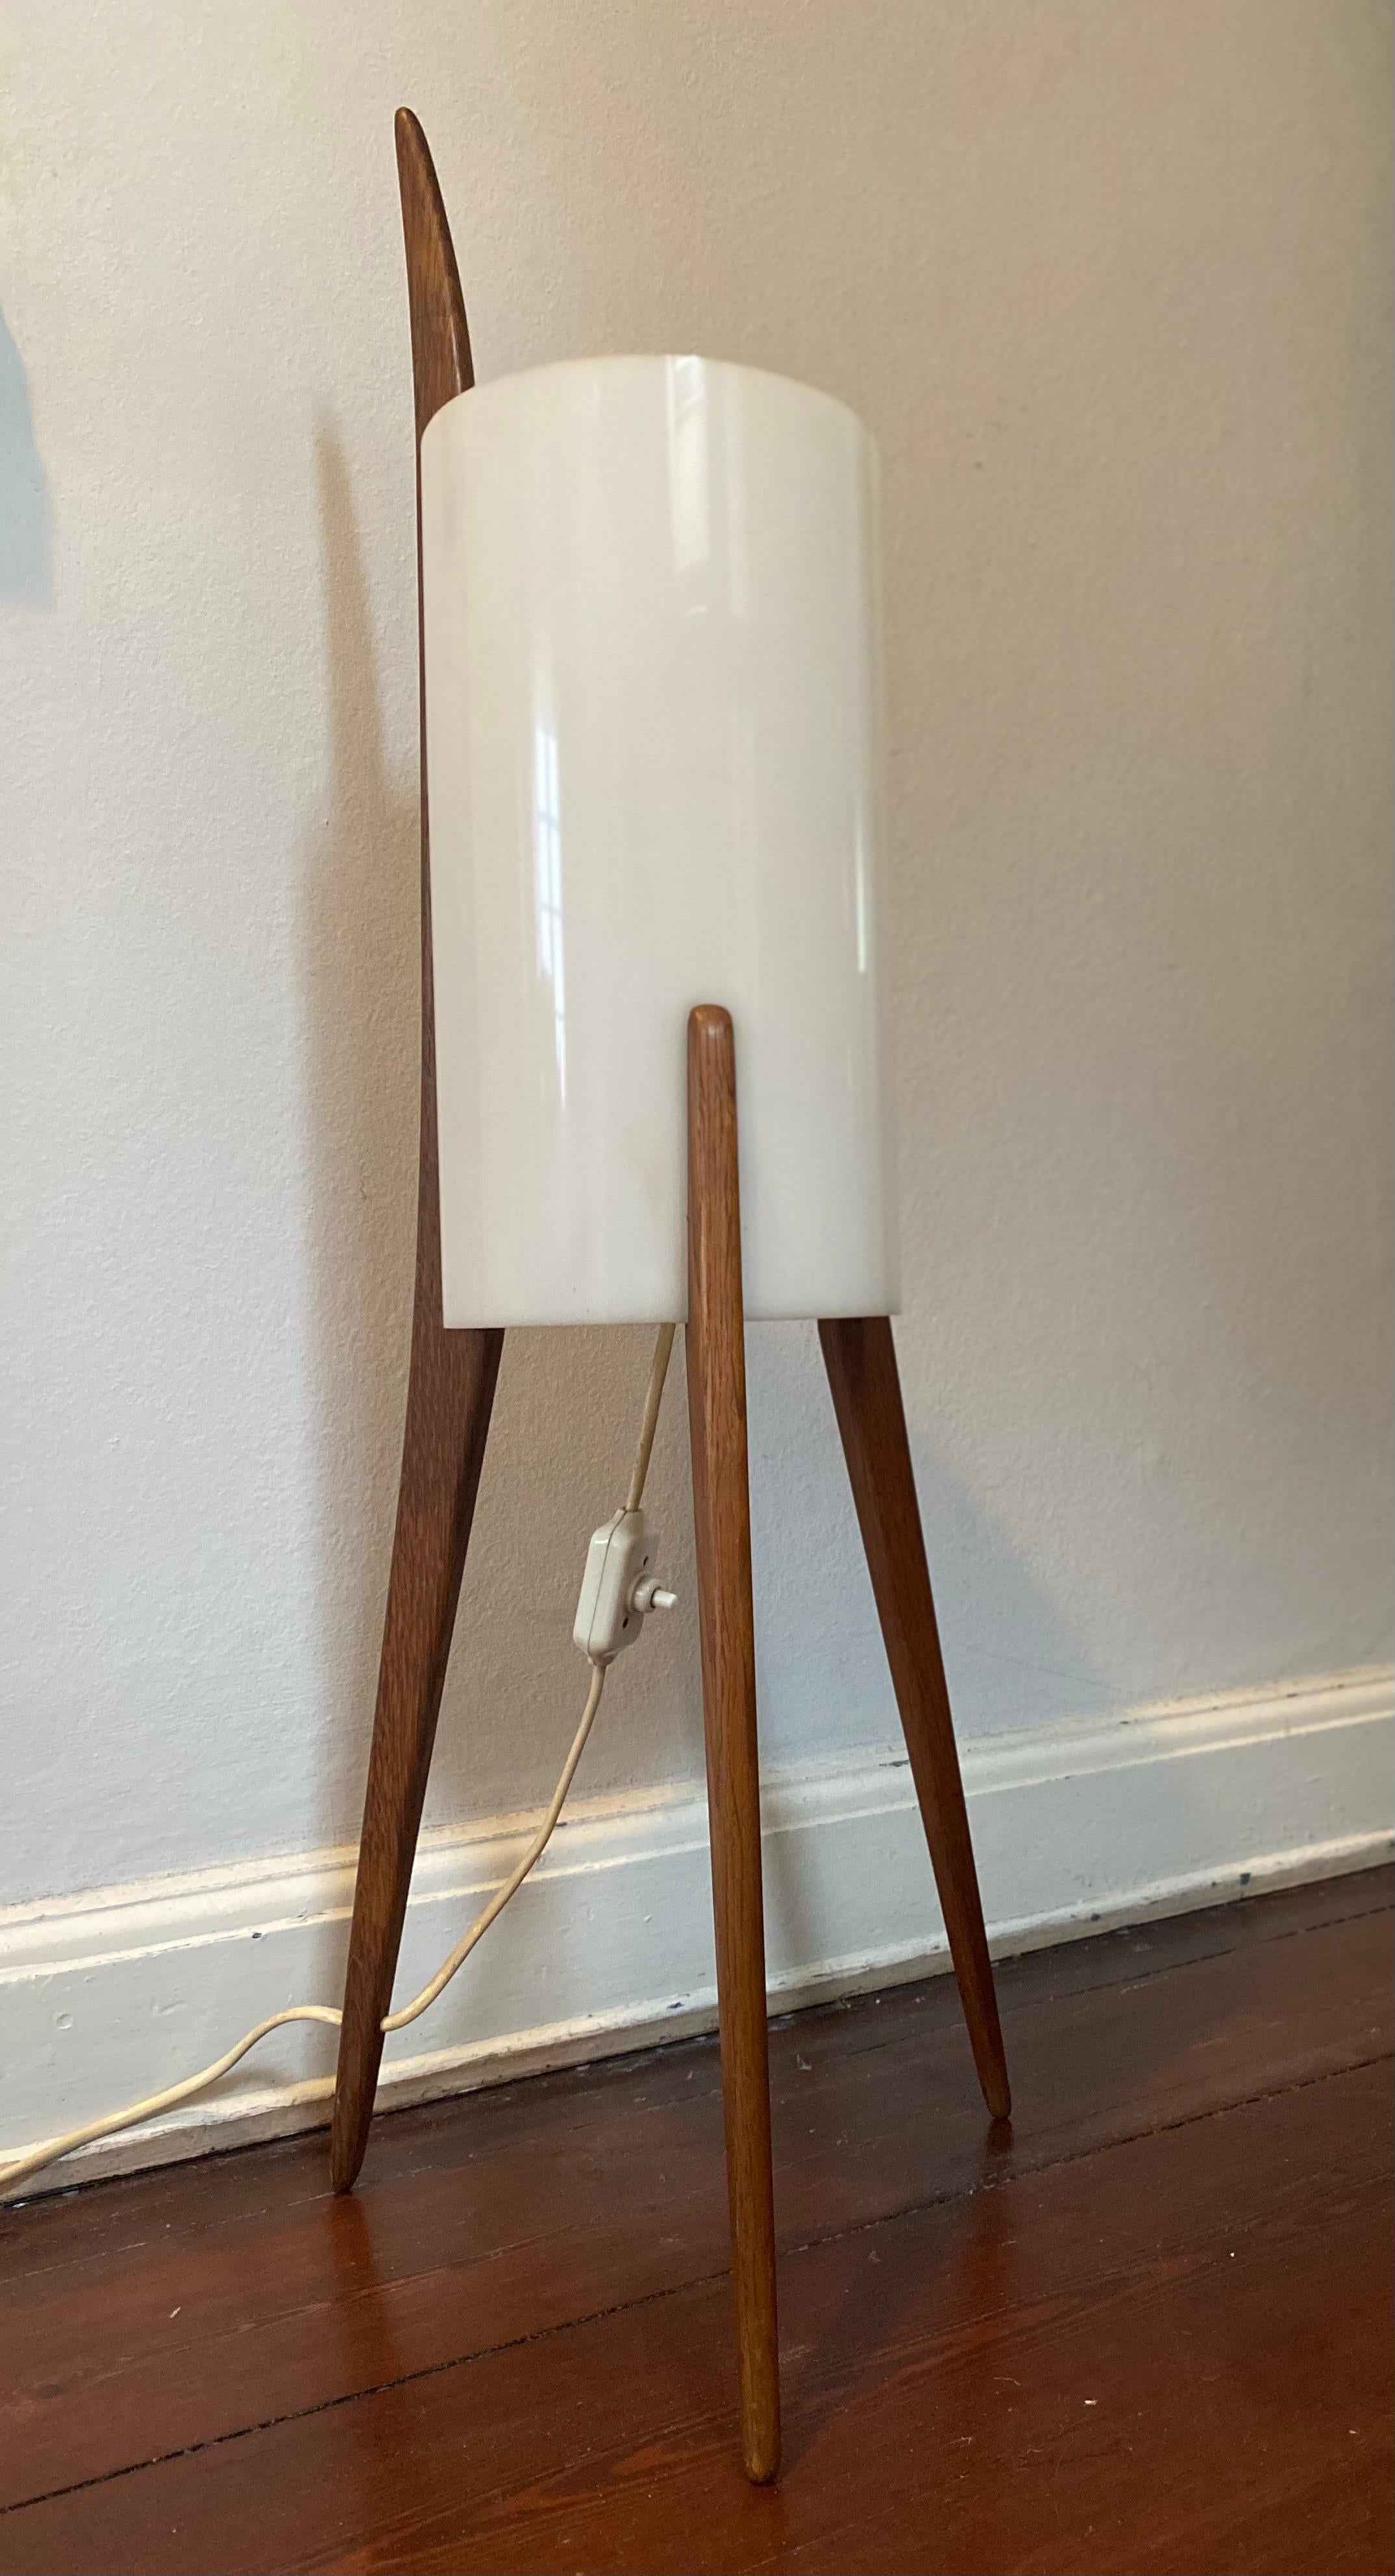 Ce rare lampadaire (modèle n° 308) a été conçu par Uno & Östen Kristiansson pour Luxus dans les années 1960 en Suède. Le pied à trois branches est en chêne et l'abat-jour en forme de cygne est en plexiglas, ce qui lui confère une belle lumière